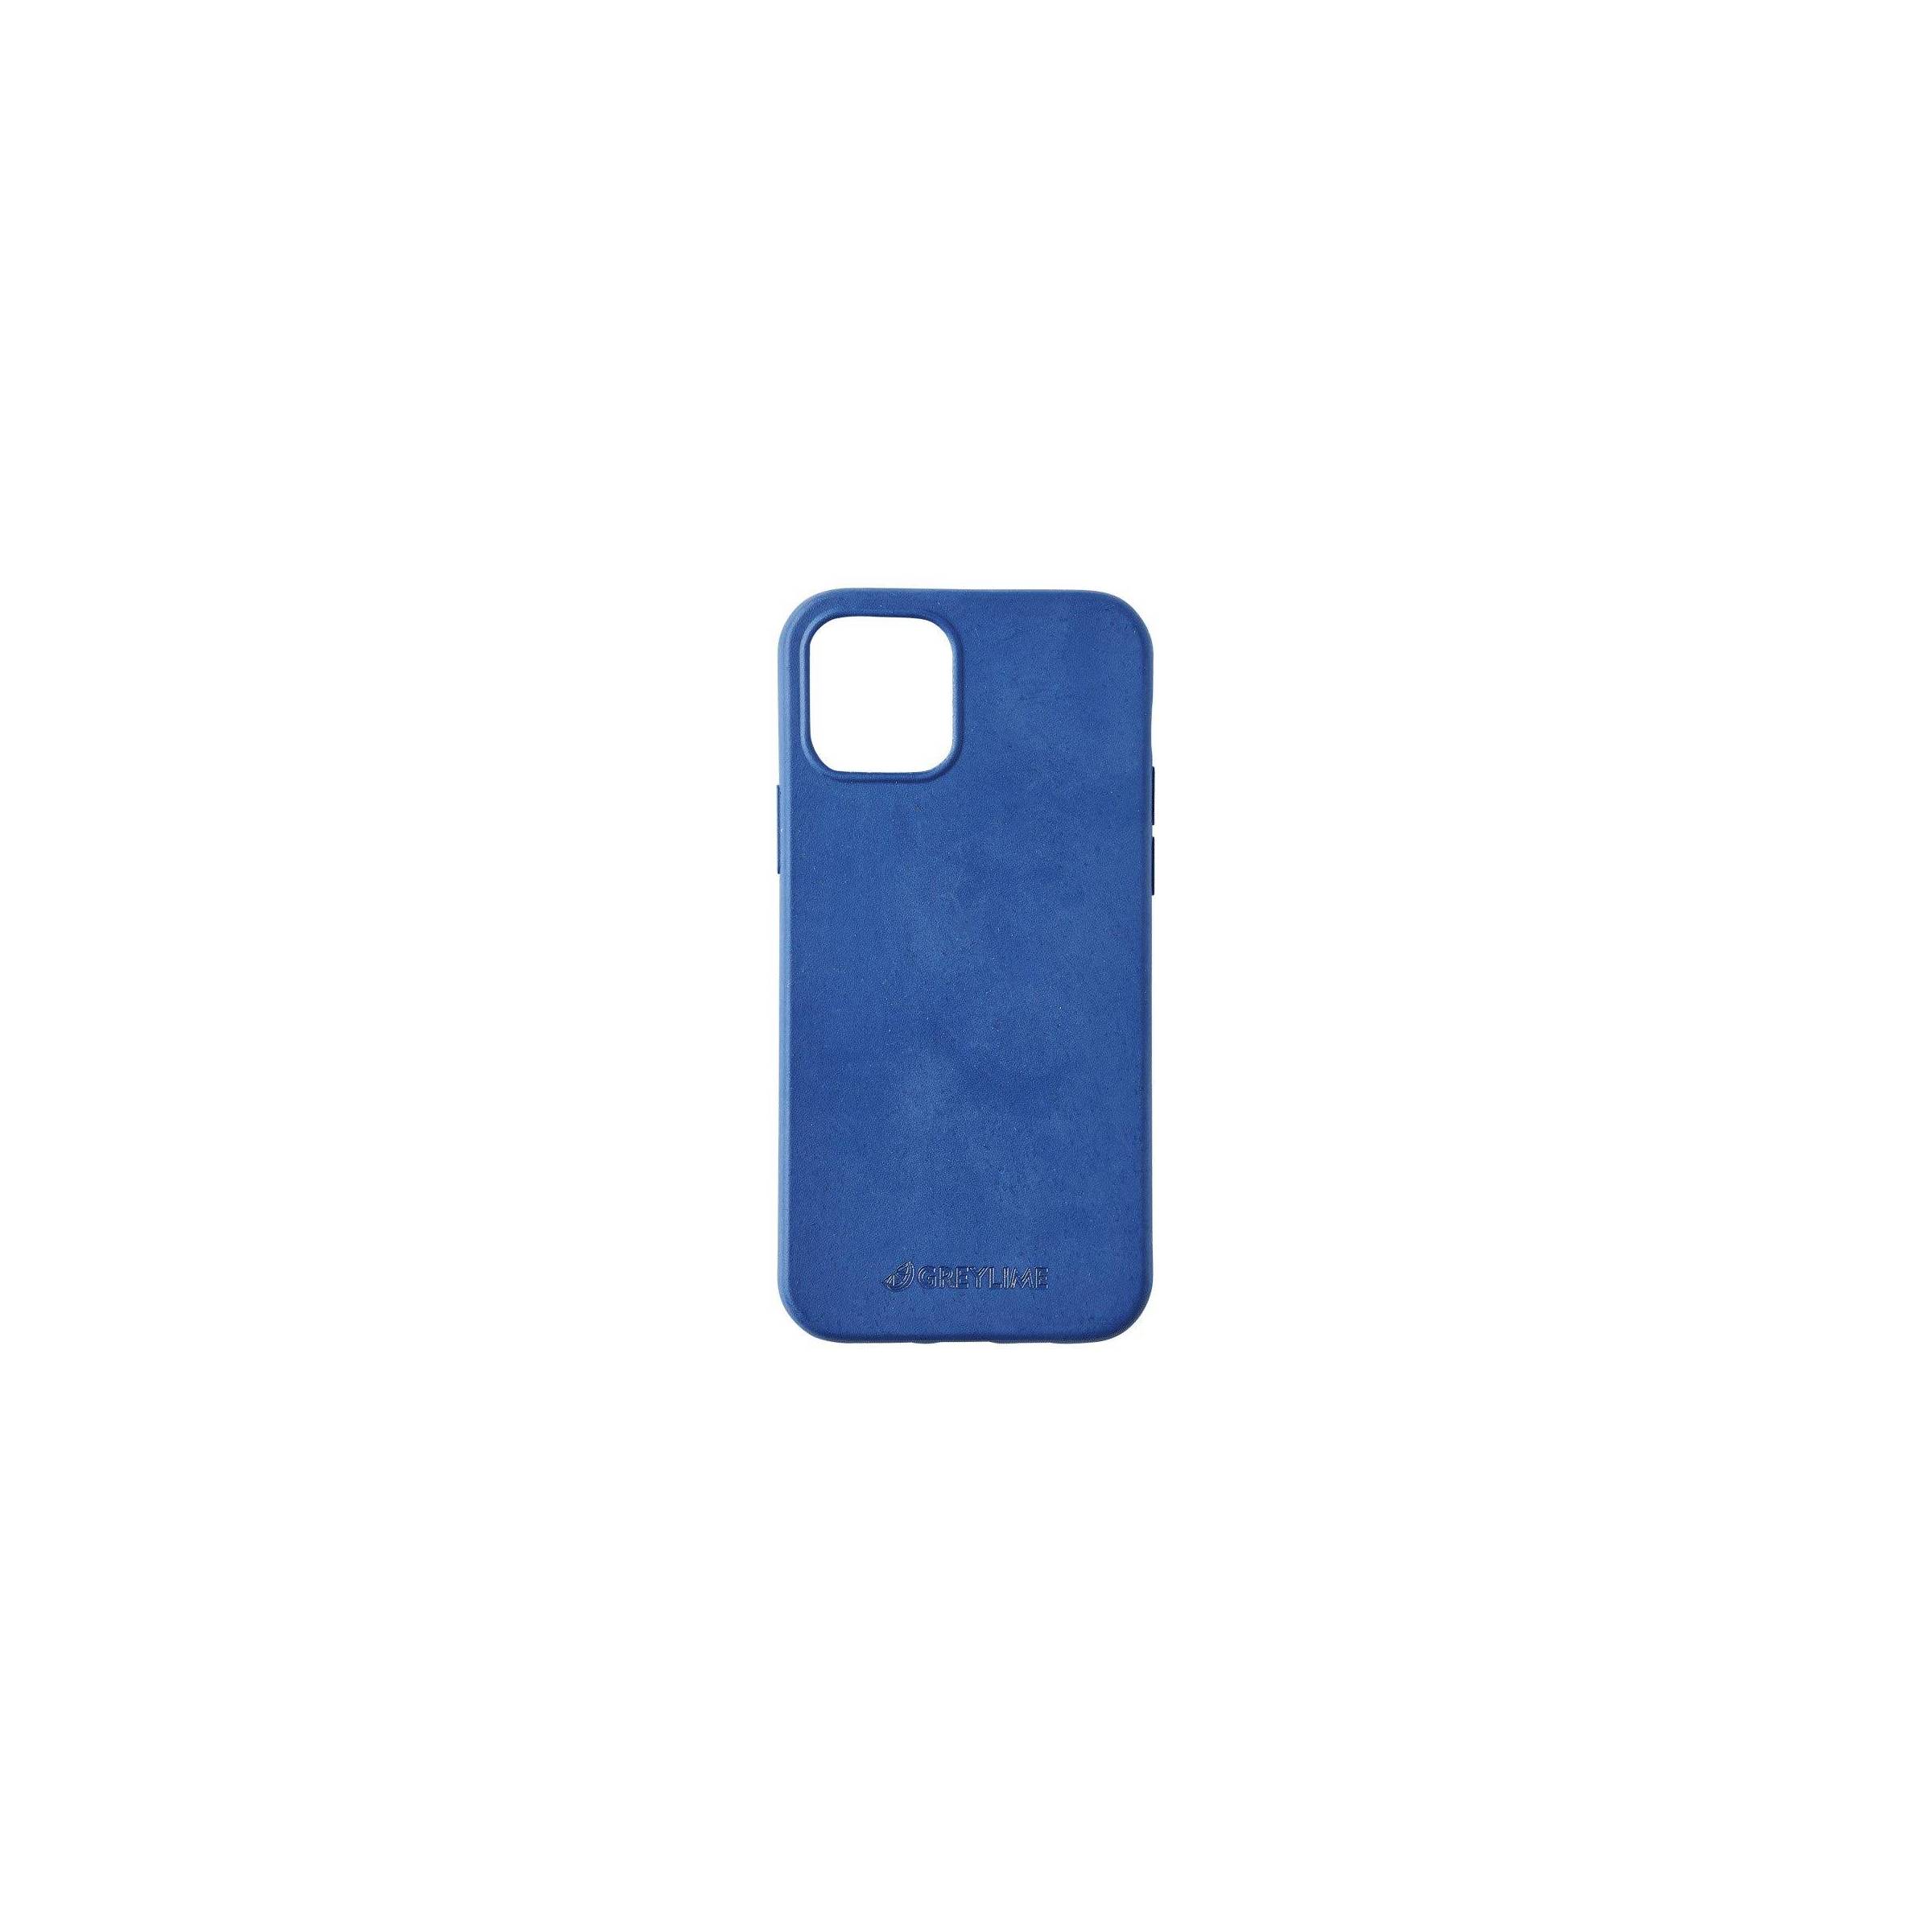 Bilde av Greylime Iphone 12/12 Pro Biodegradable Cover Navy Blue